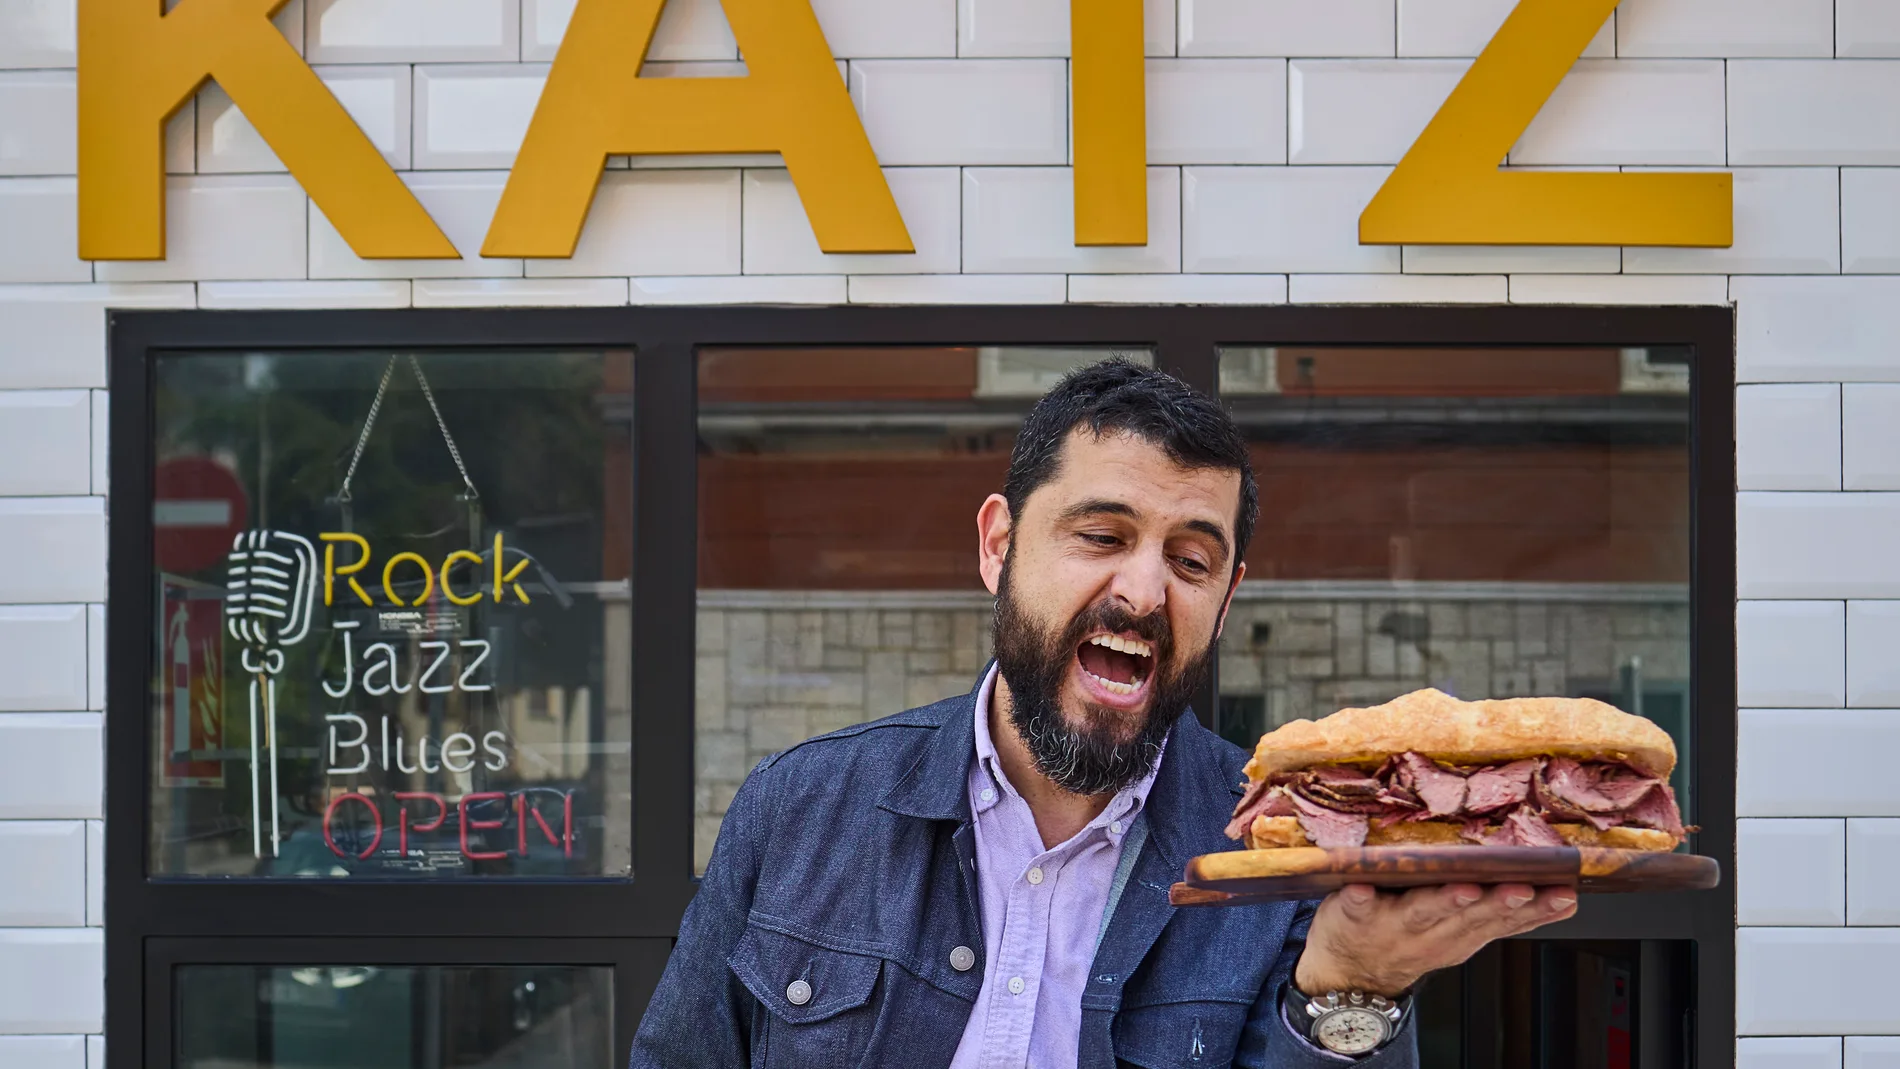 David Bibi, propietario del restaurante Katz, nos muestra su sandwich de Patrami